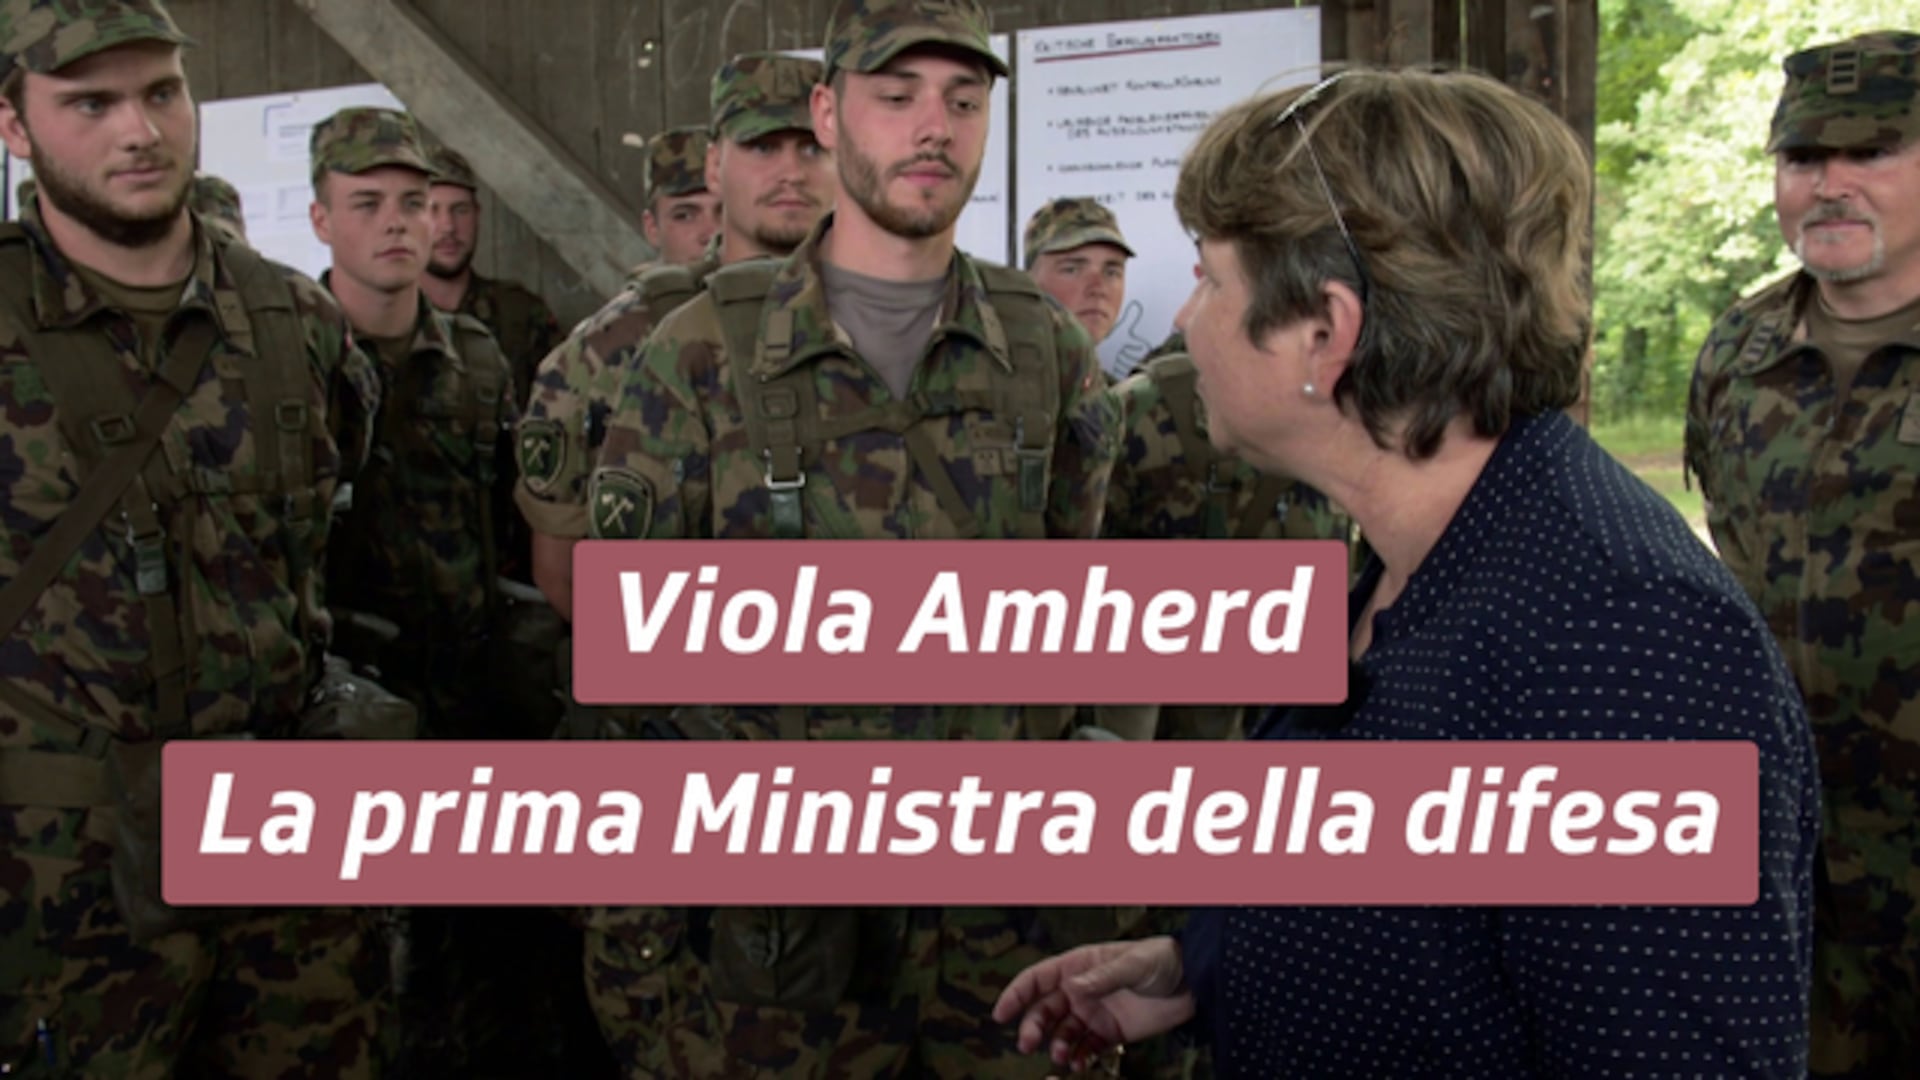 Viola Amherd – La prima Ministra della difesa